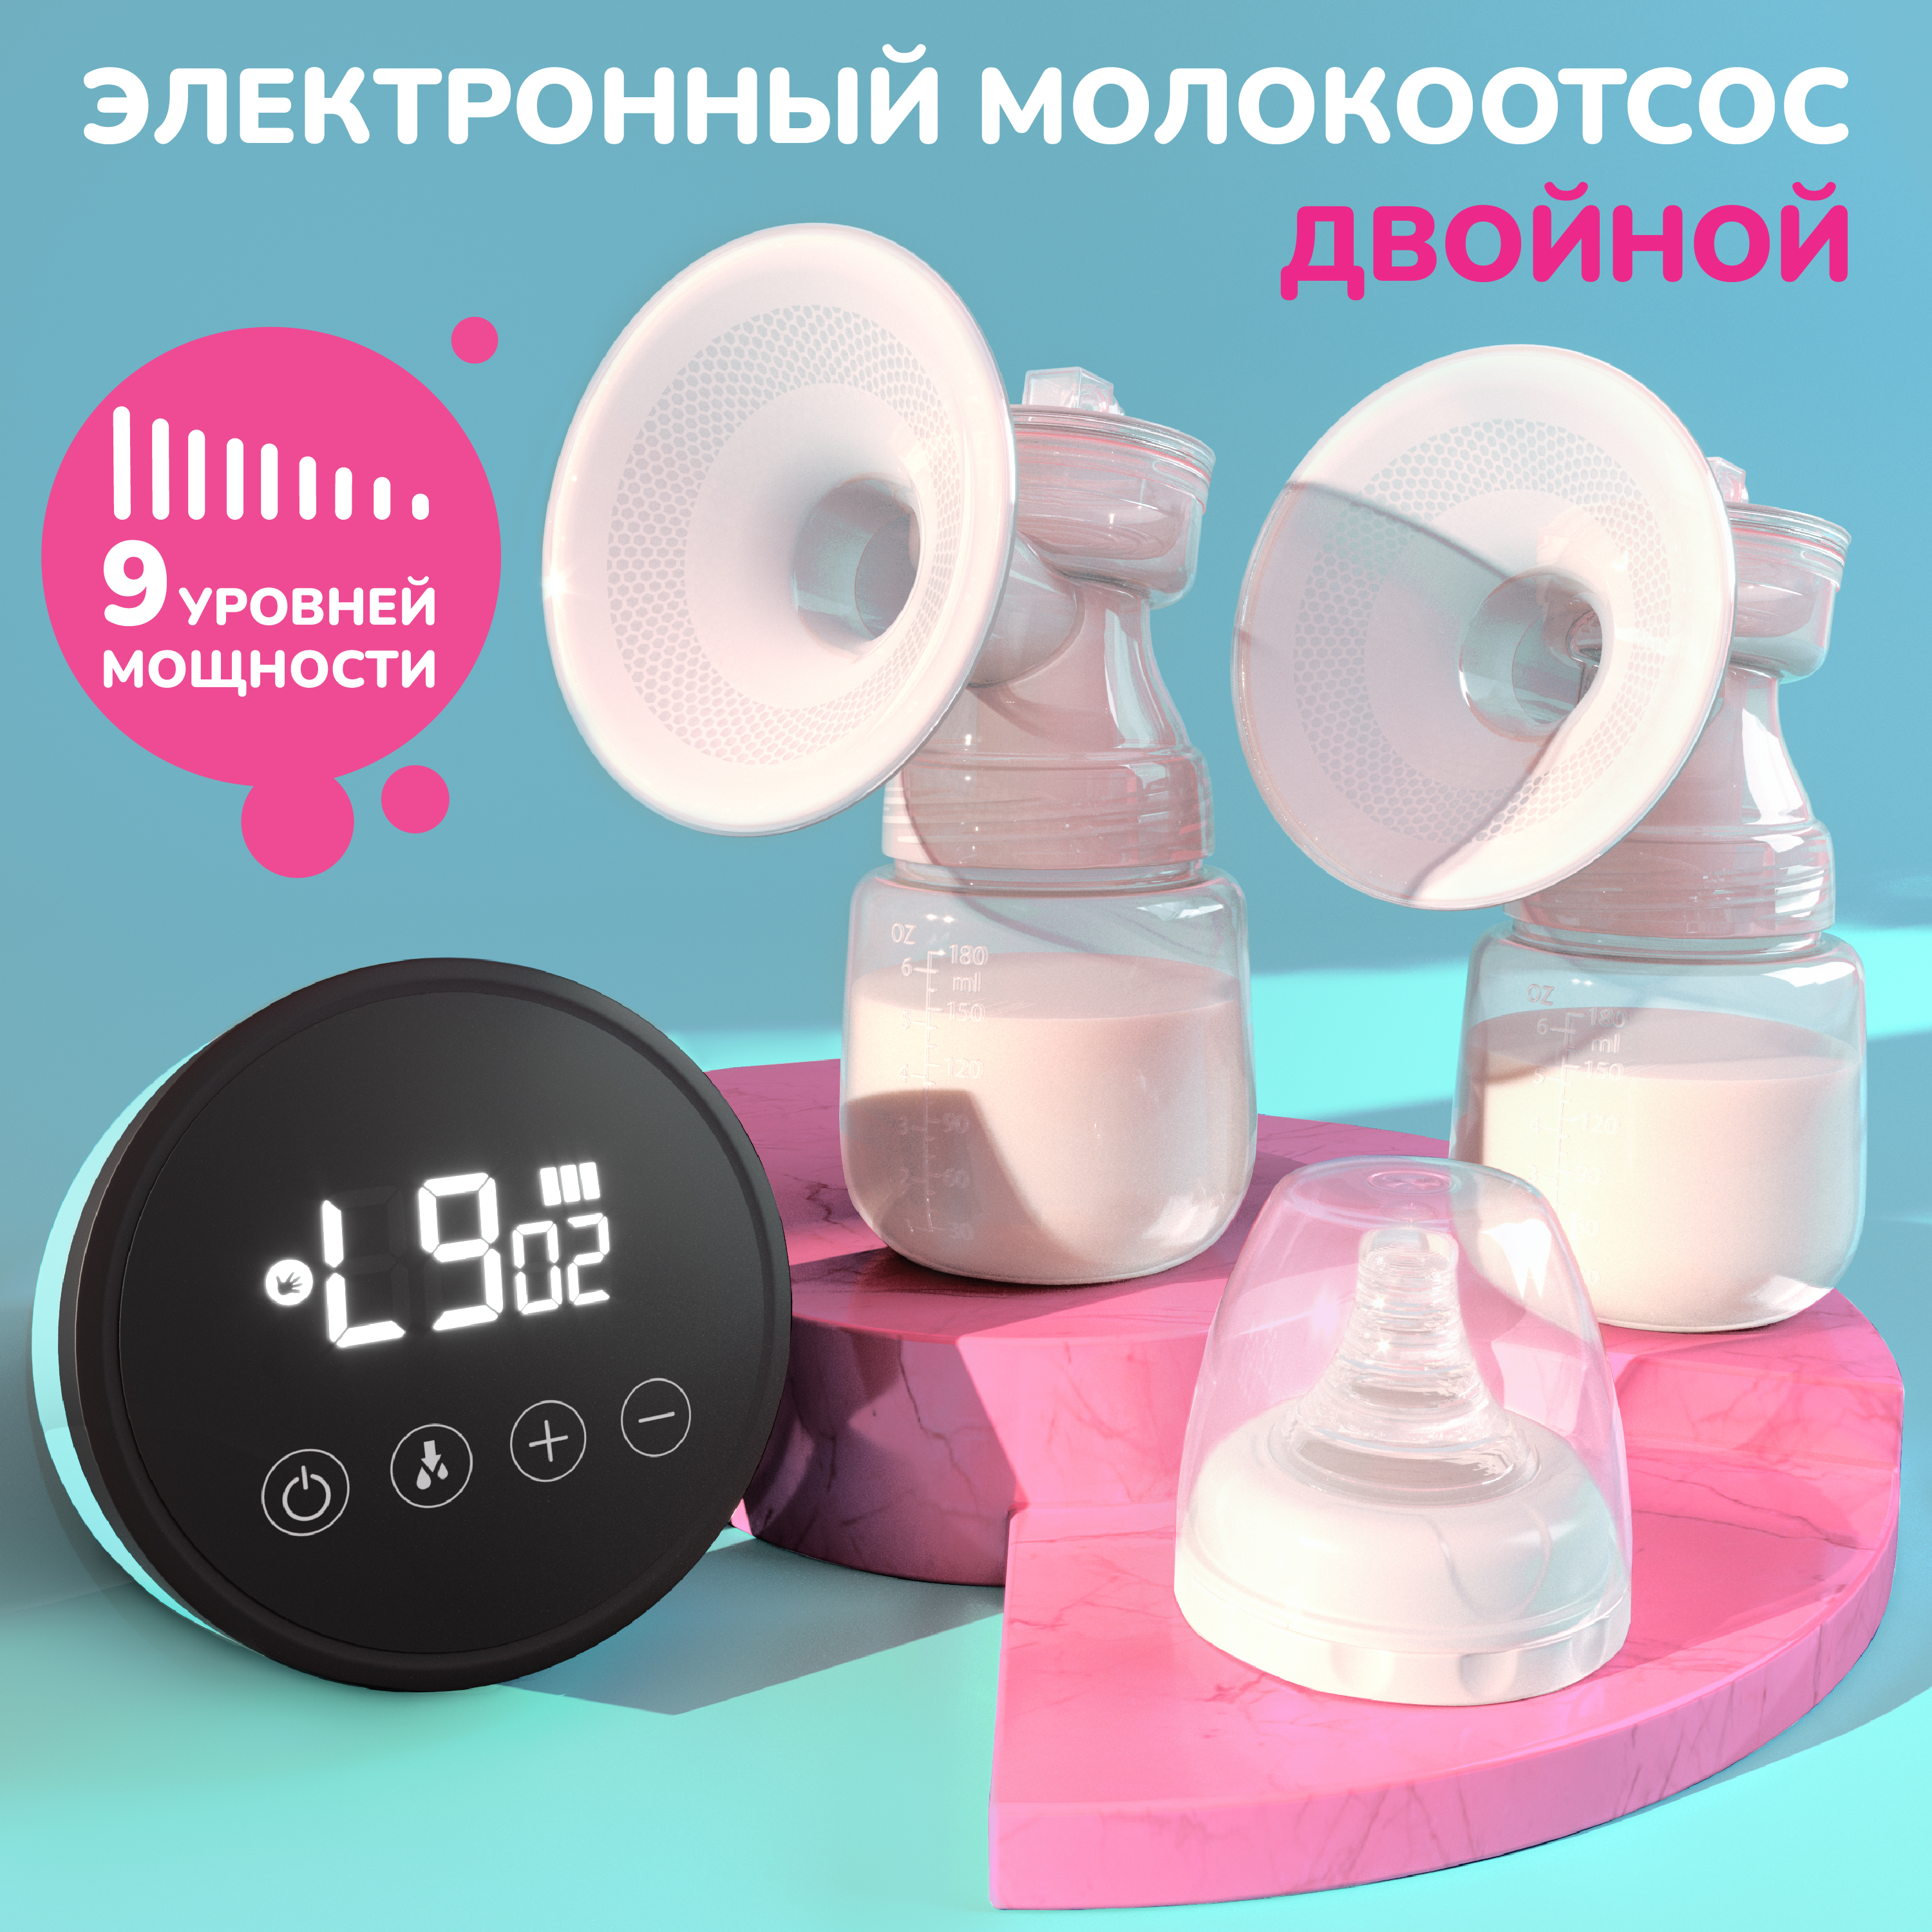 Молокоотсос электрический двухфазный Evo Beauty двойной компактный